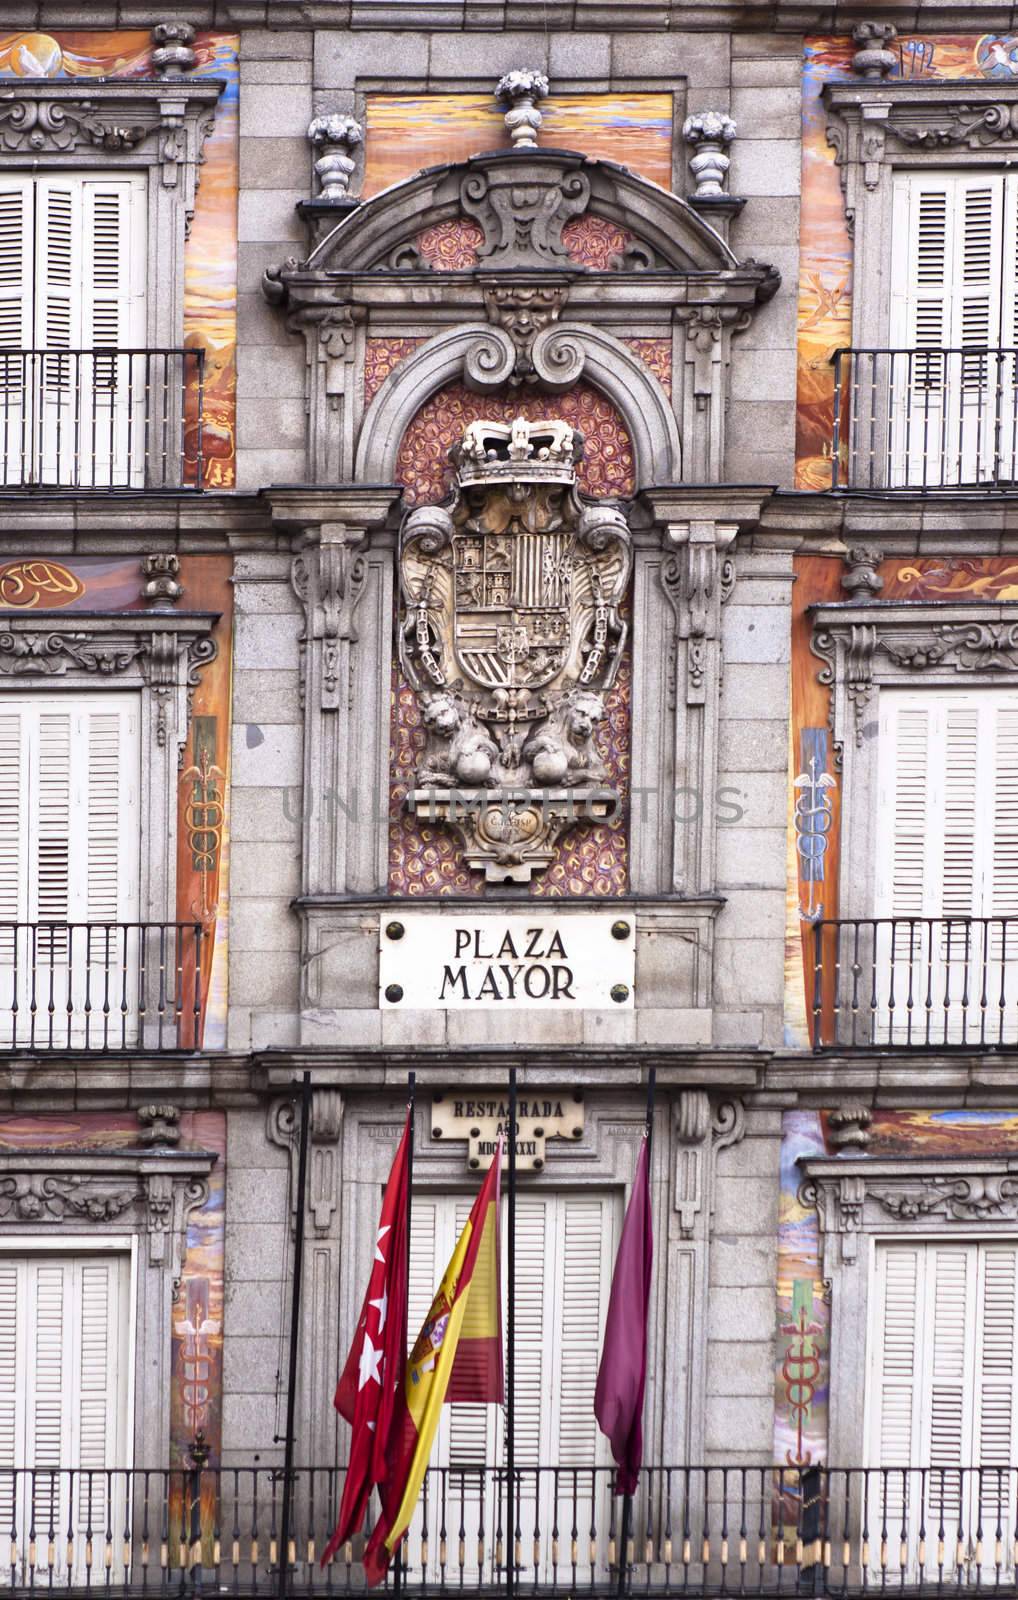 Casa de la Panaderia, Plaza Mayor, Madrid. by kasto